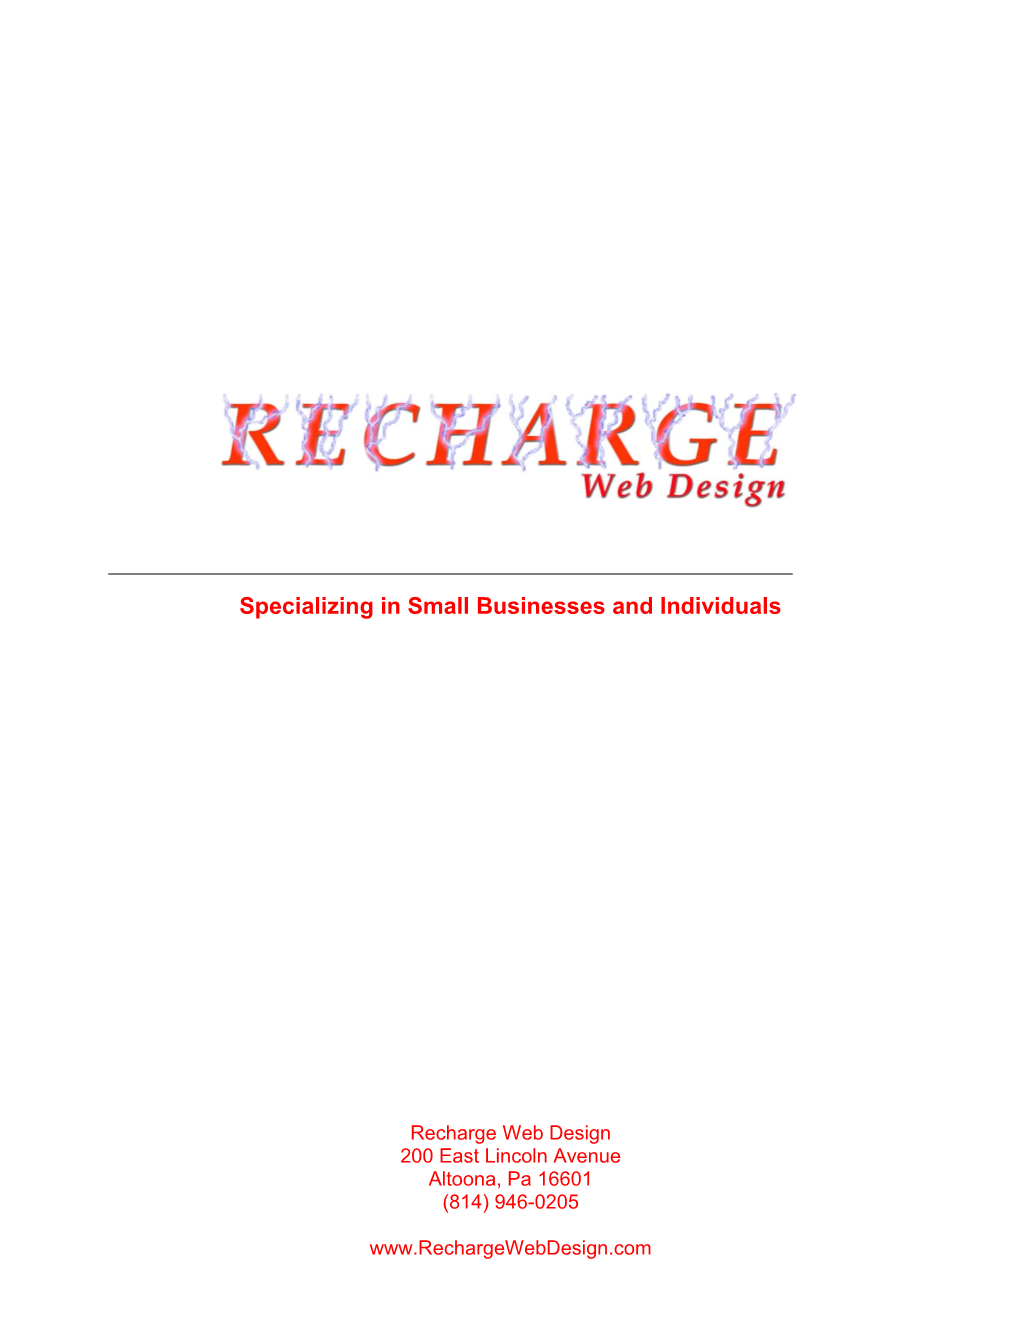 Recharge Web Design Information Packet V.9